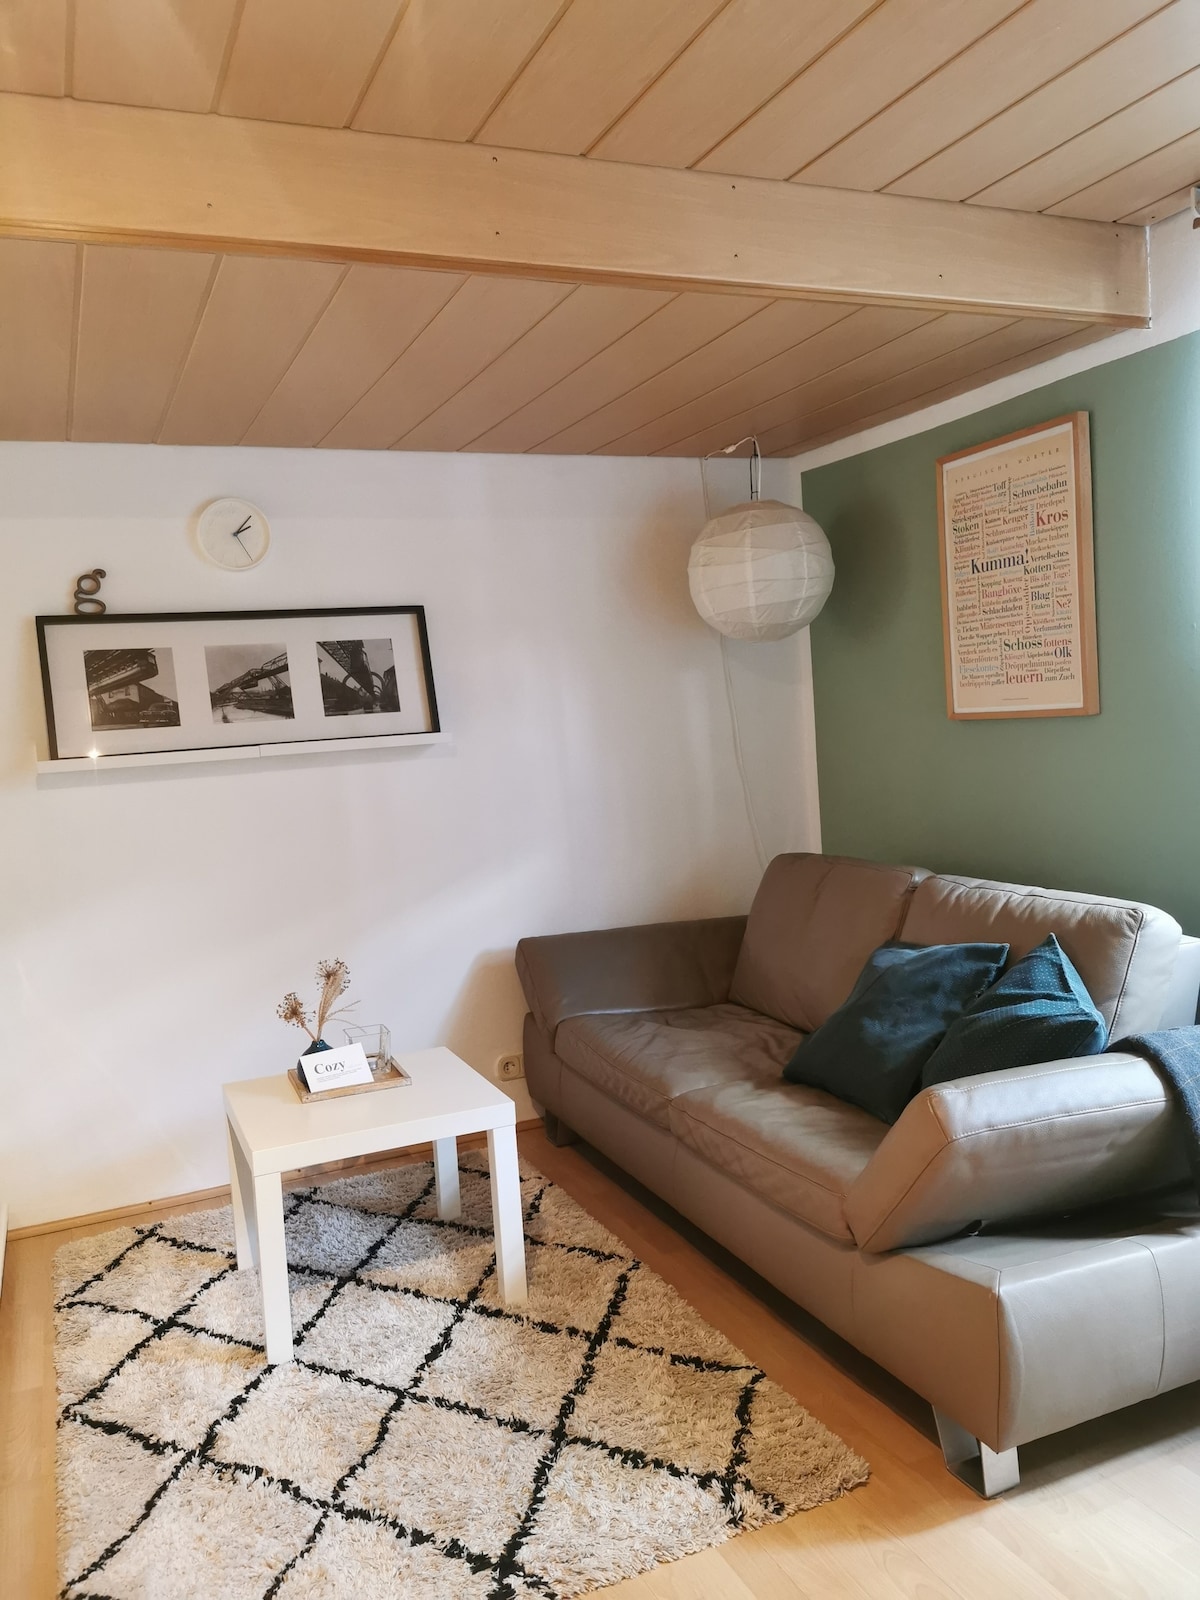 现代舒适的单间公寓-舒适的住宿体验